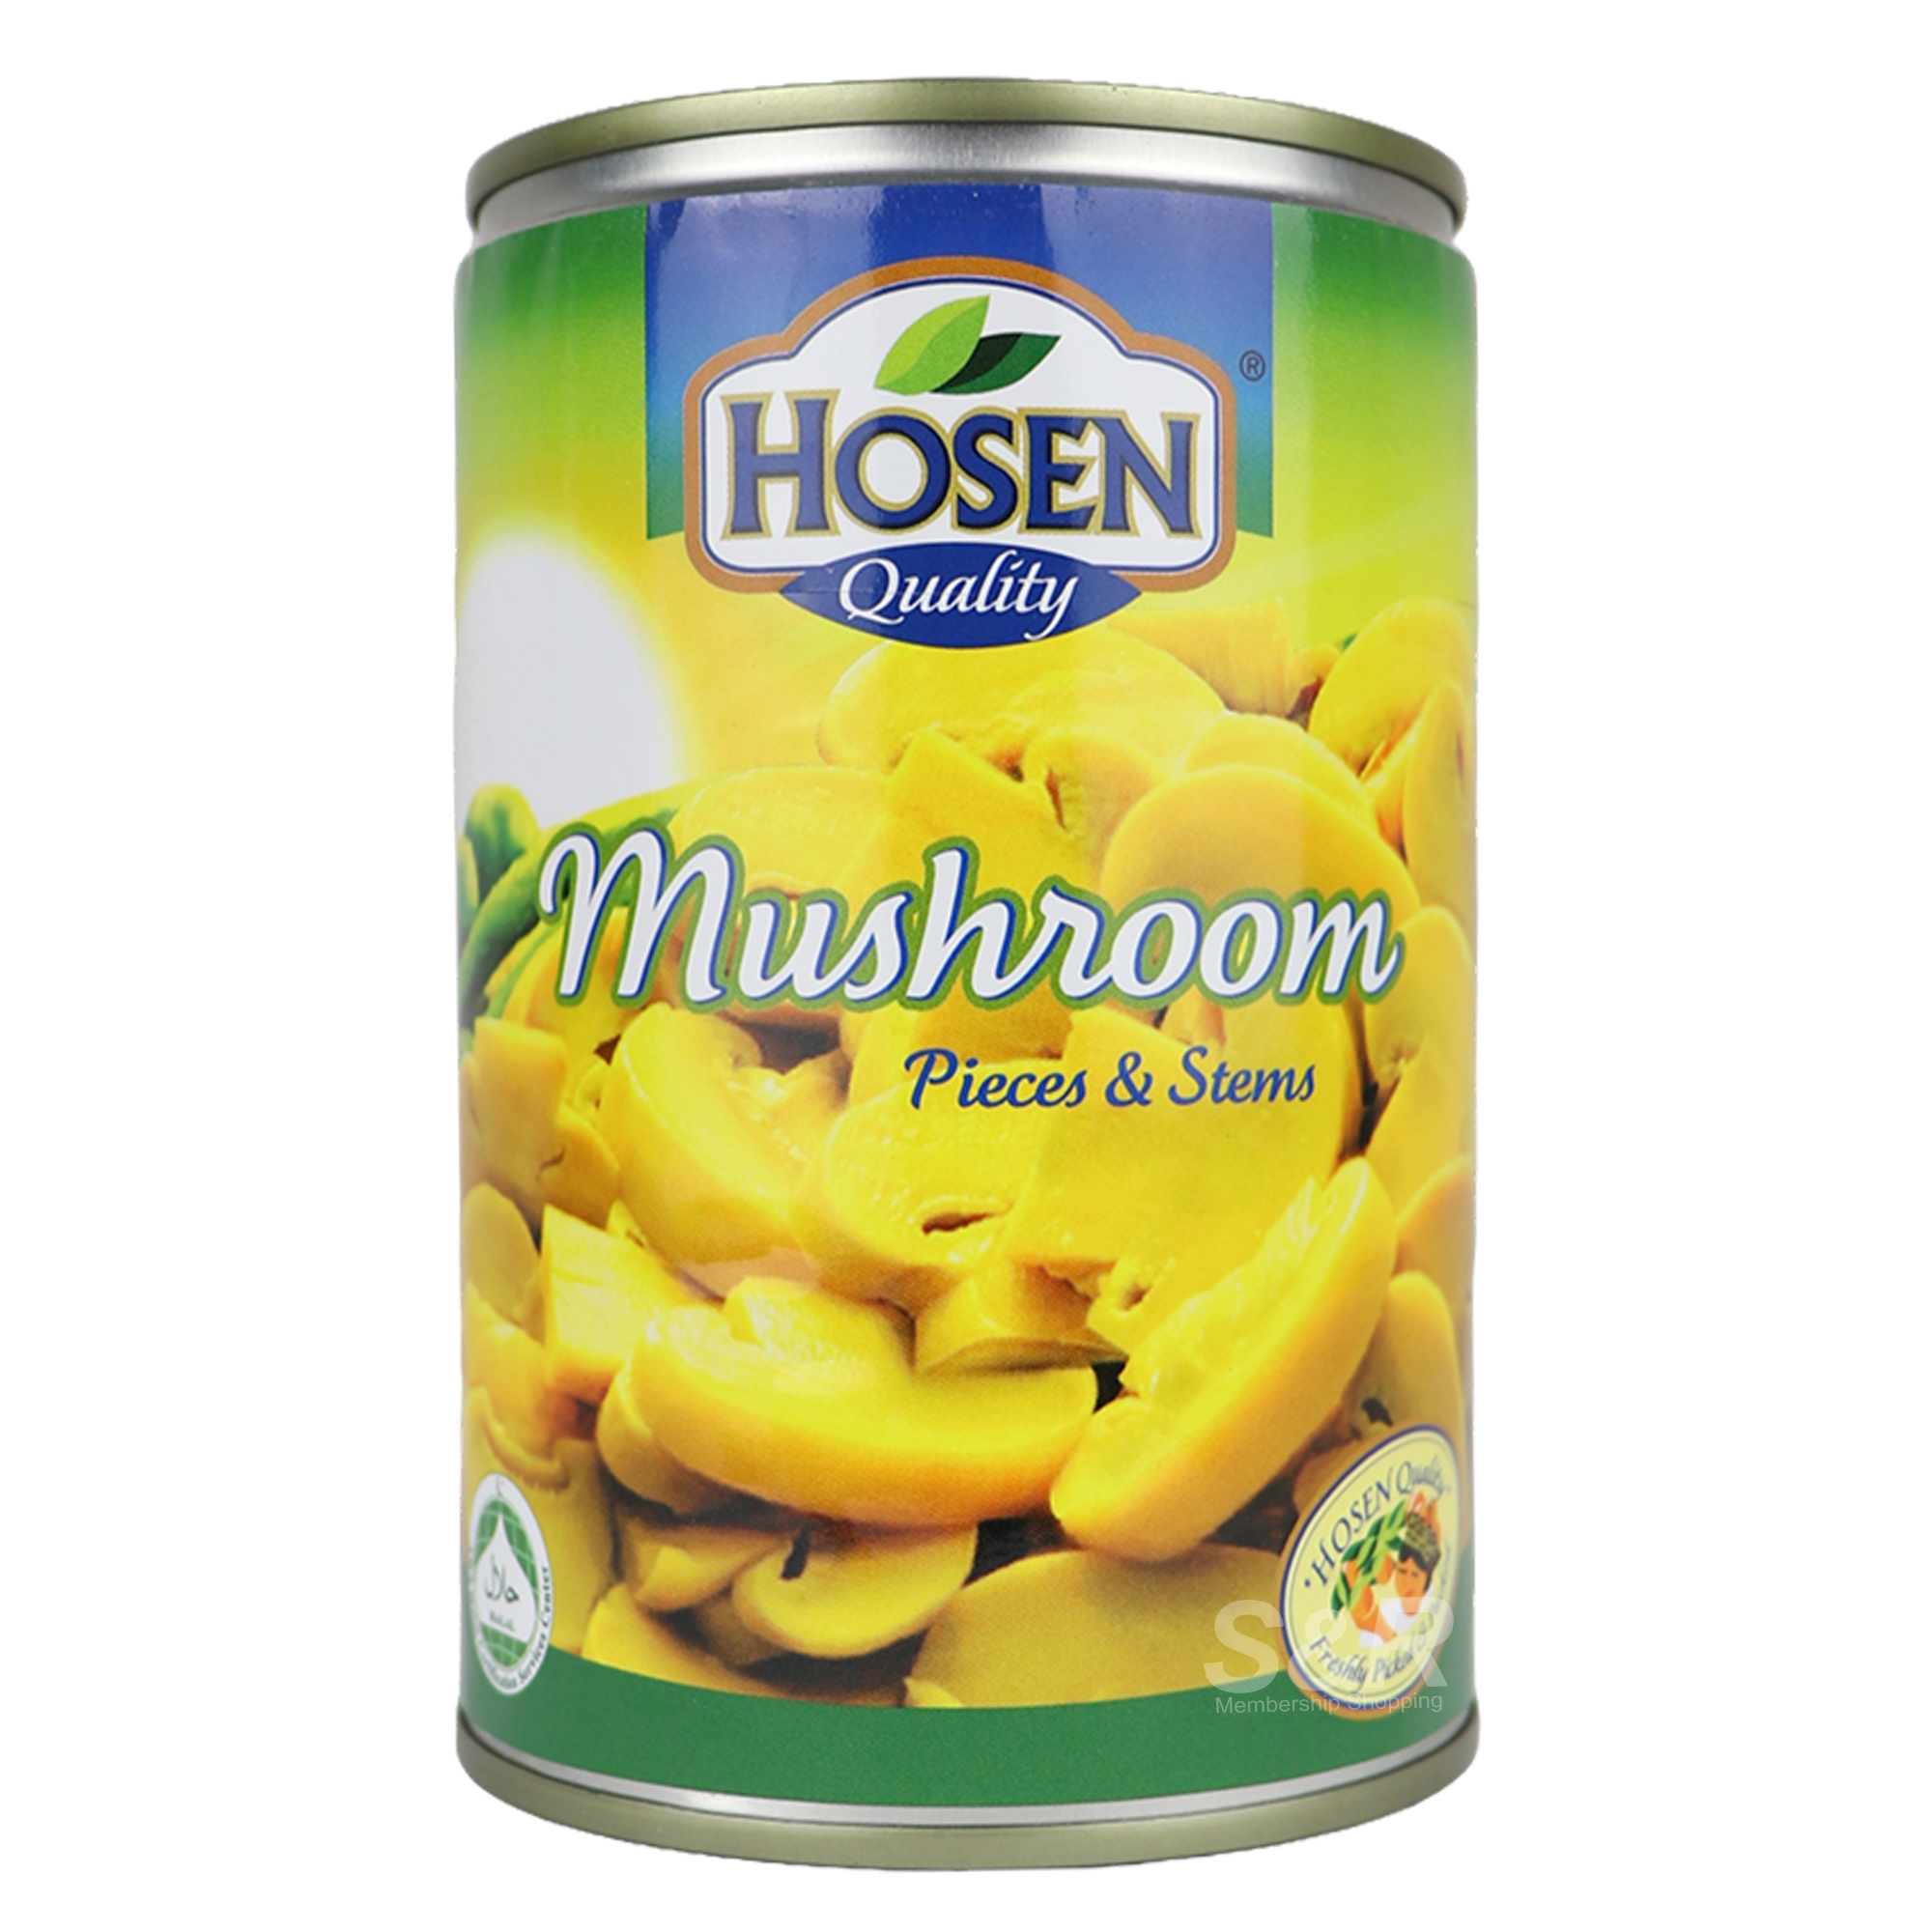 Hosen Quality Mushroom Pieces and Stems 425g